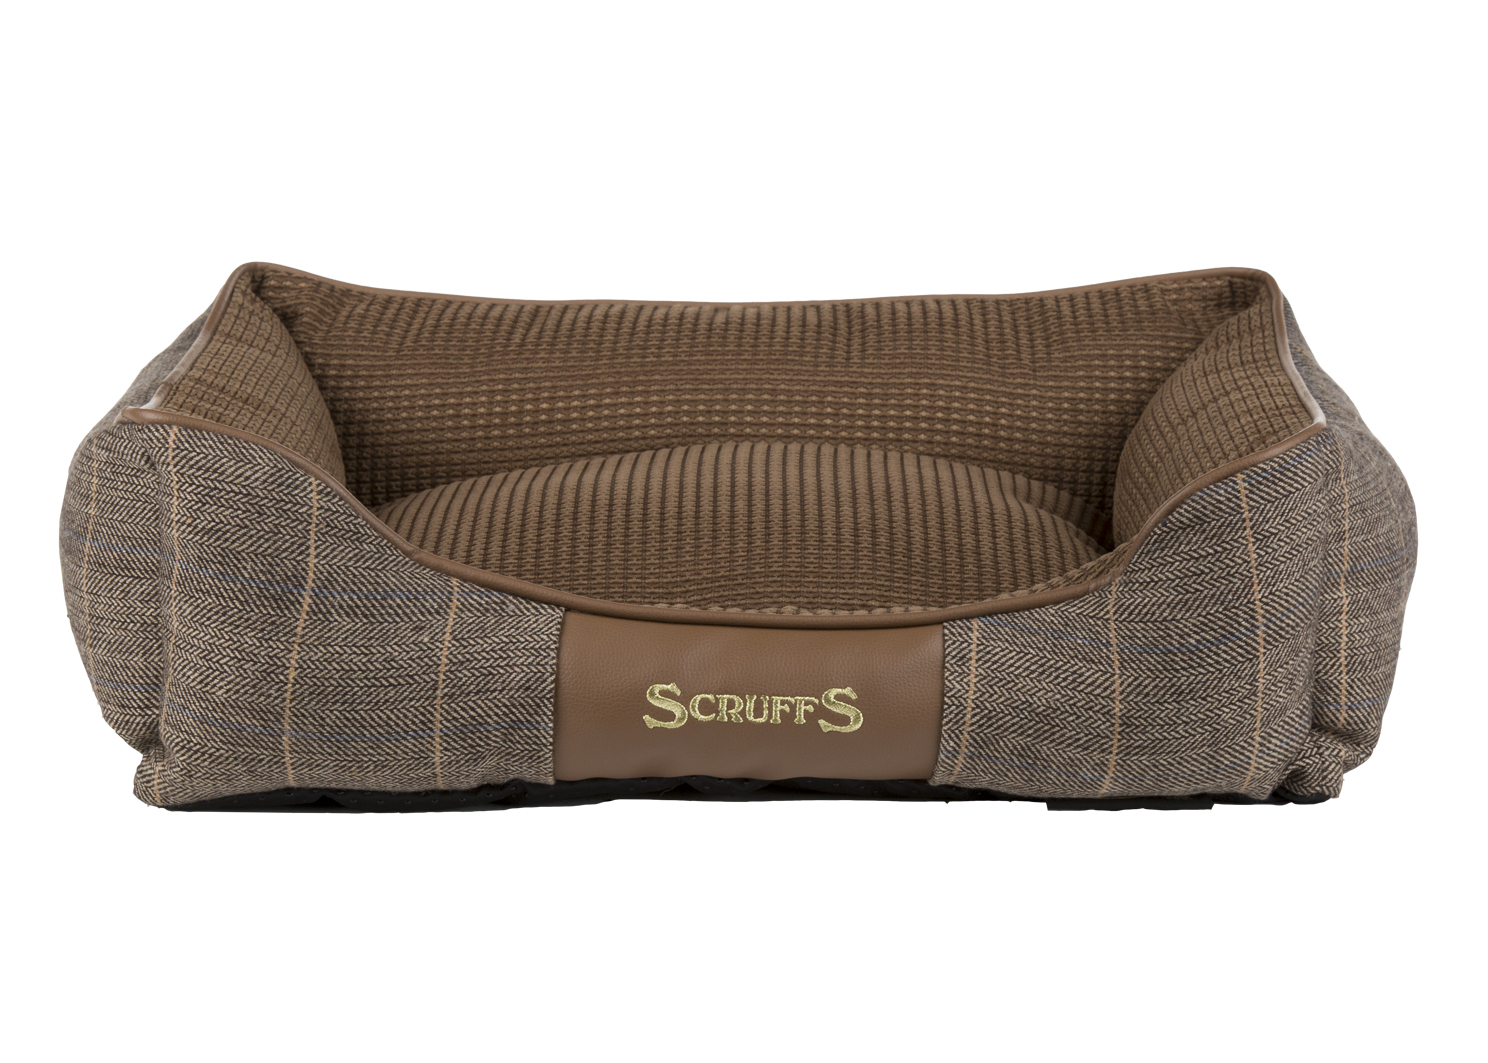 Лежак для собак Scruffs Windsor, с бортиками, коричневый, 50 х 40 х 14 см